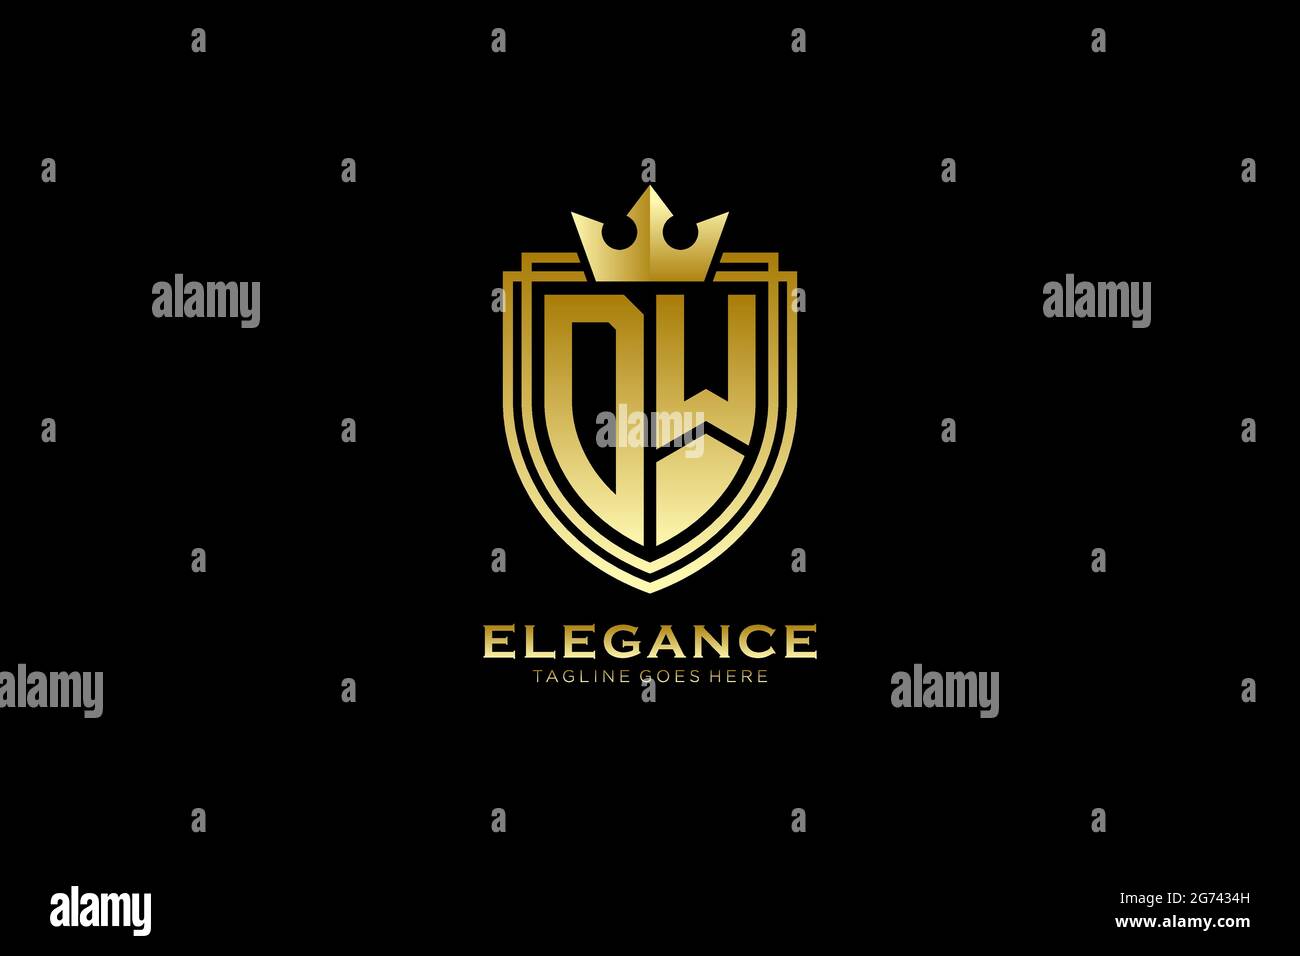 DW Elegantes Luxus-Monogramm-Logo oder Badge-Vorlage mit Rollen und königlicher Krone - perfekt für luxuriöse Branding-Projekte Stock Vektor